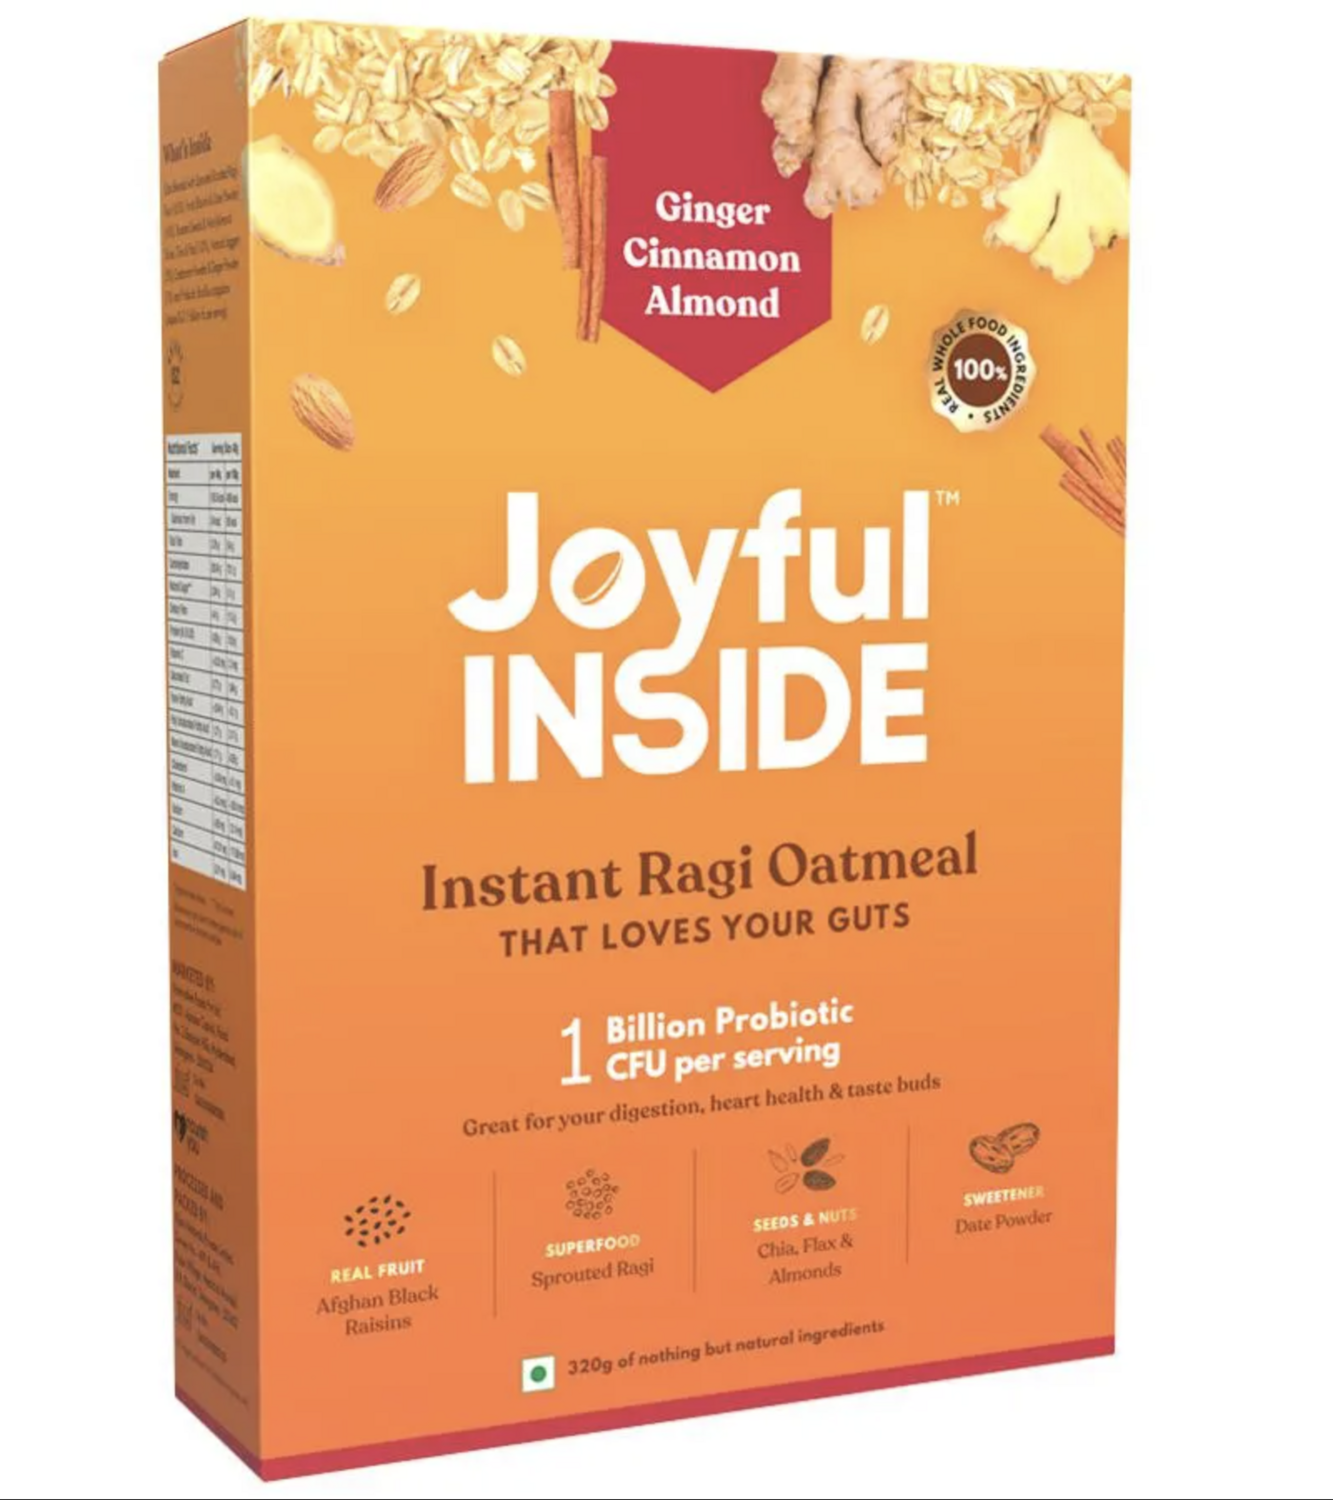 Joyful Inside - Ginger Cinnamon Almond